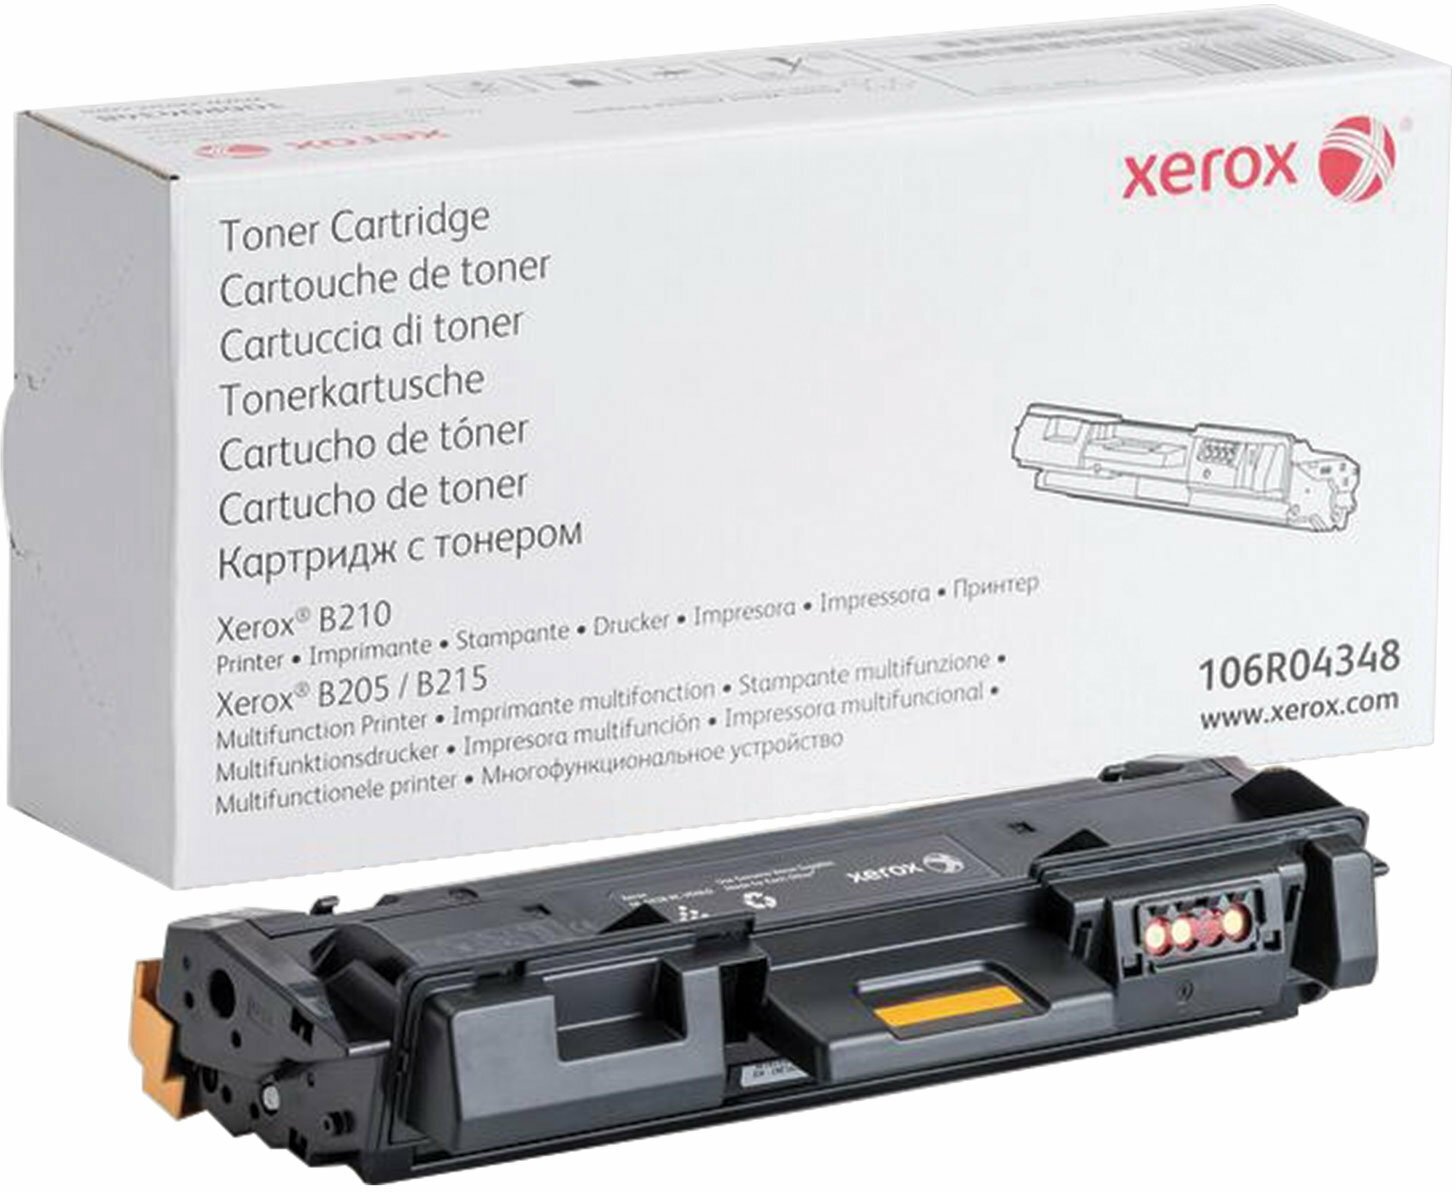 Тонер-картридж для лазерного картриджа Xerox для B205, B210, B215, оригинальный, ресурс 3000 страниц